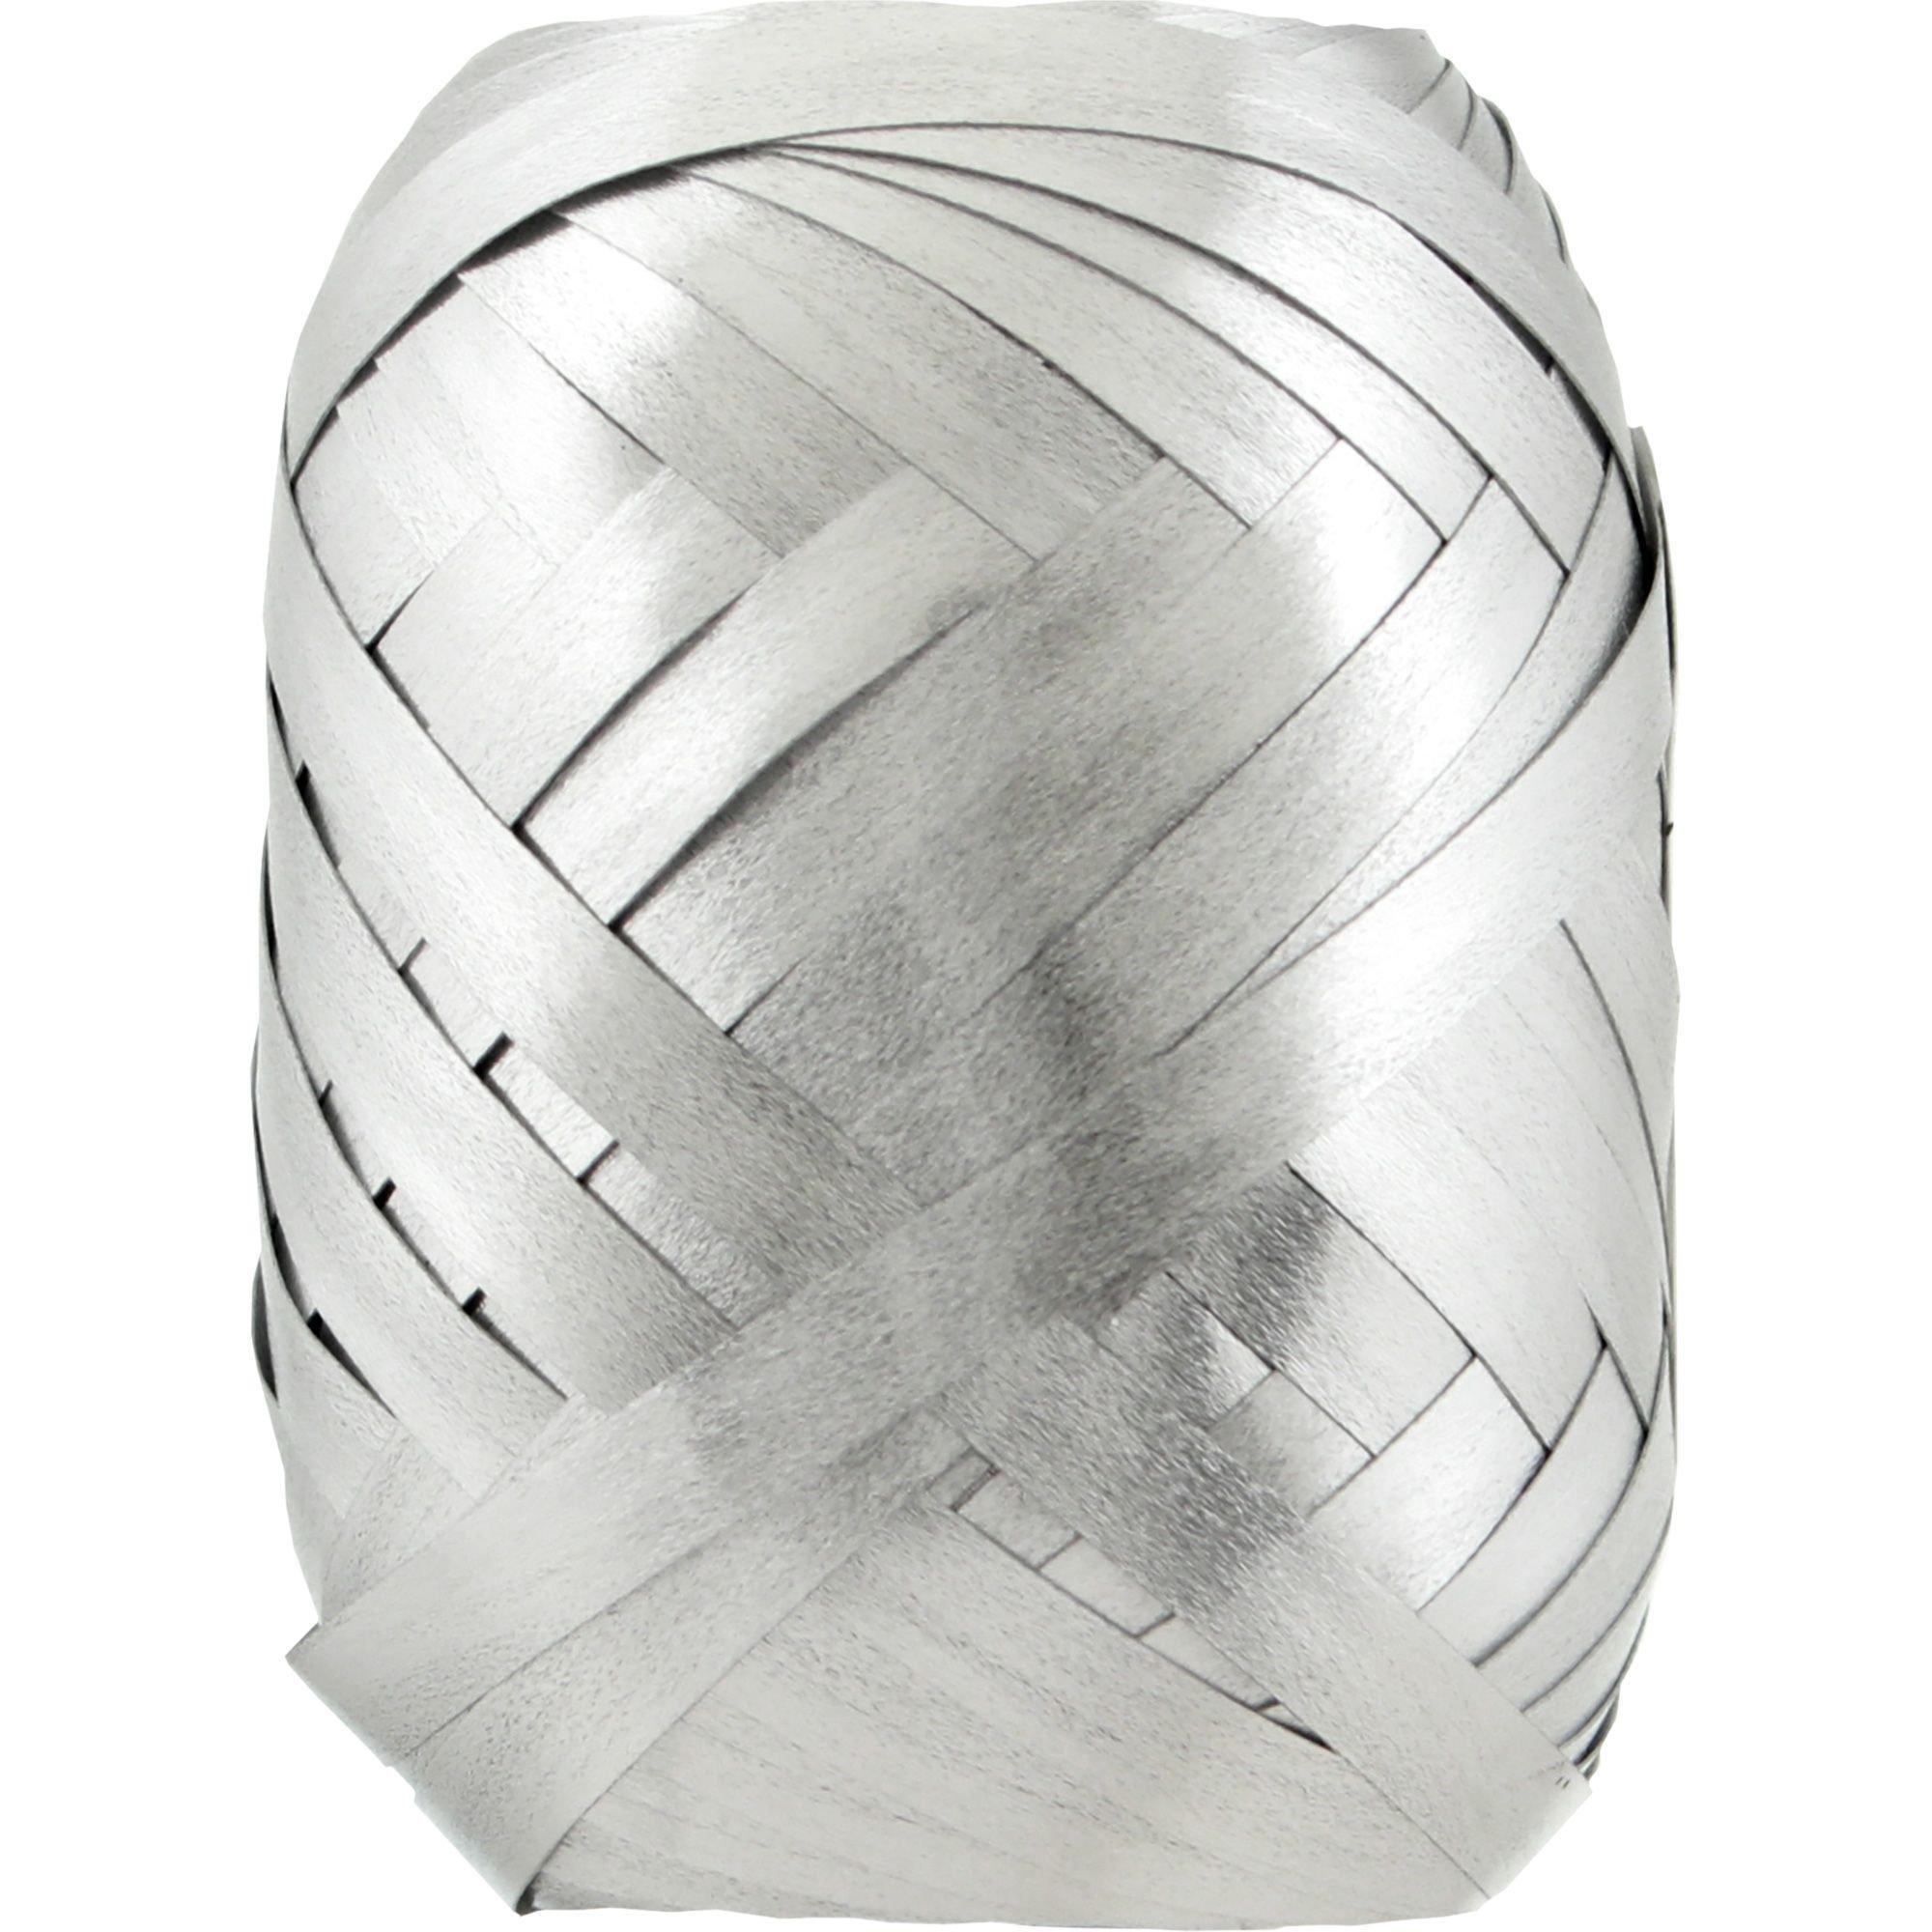 Metallic Silver Curling Ribbon Keg